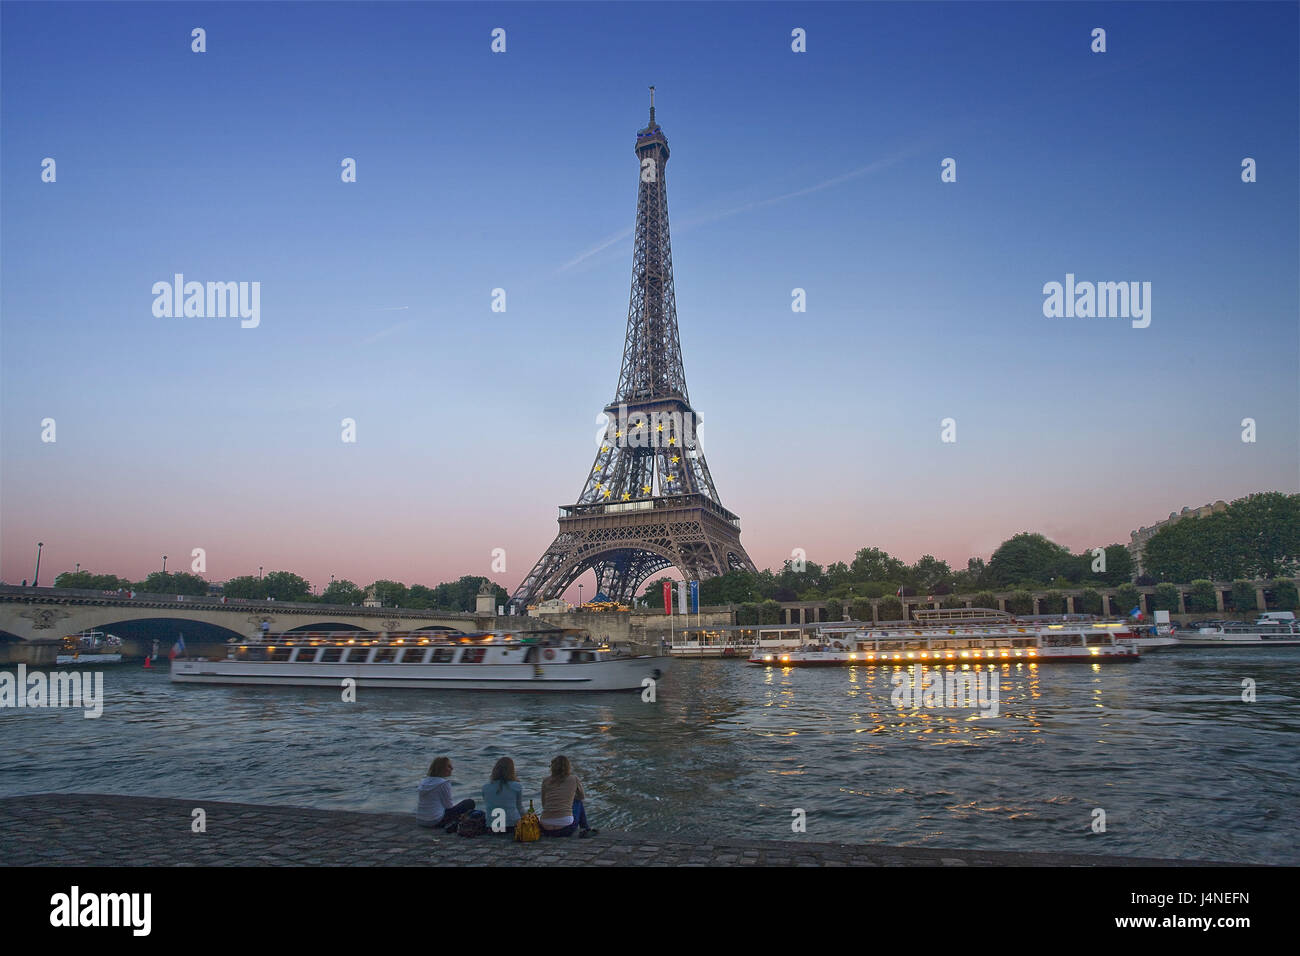 Frankreich, Paris, Eiffelturm, seine flux, Schiffe, Küsten, Touristen, Abendlicht Stockfoto